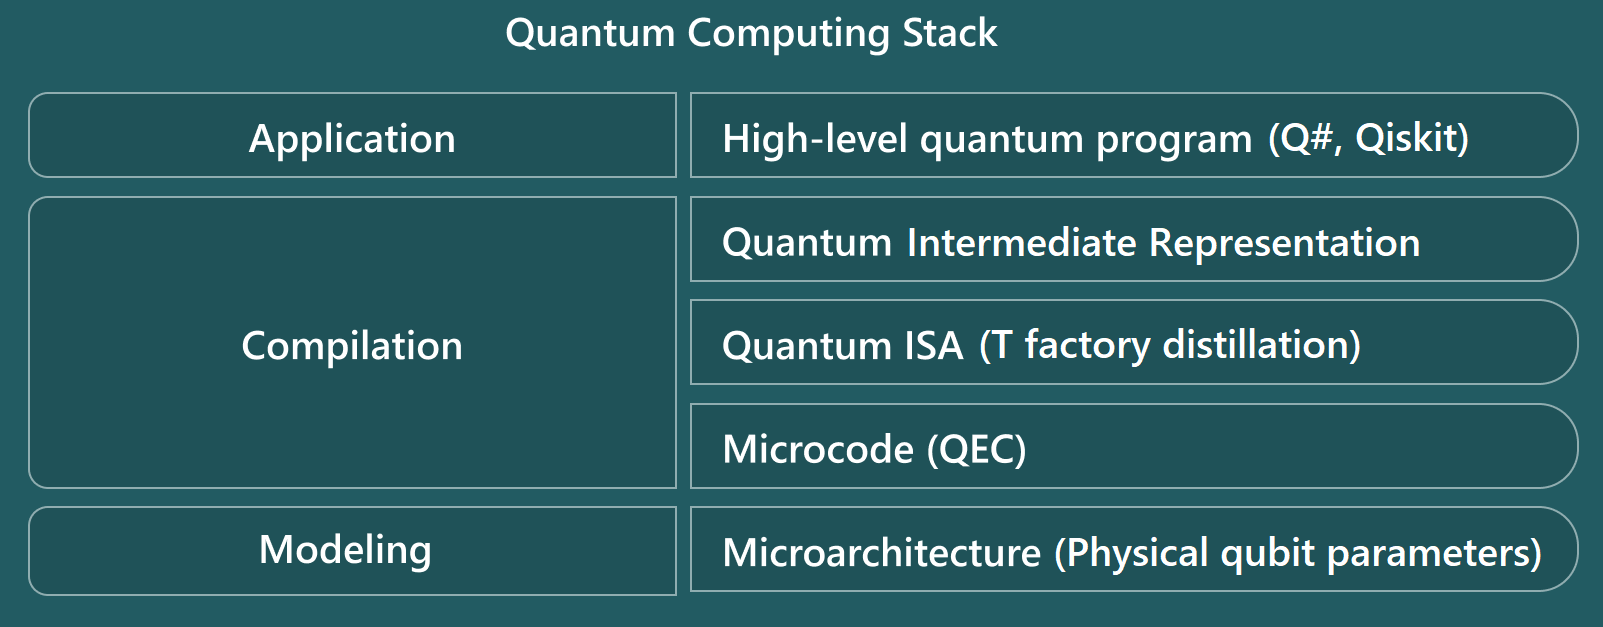 Схема, показывающая уровни стека квантовых вычислений средства оценки ресурсов.